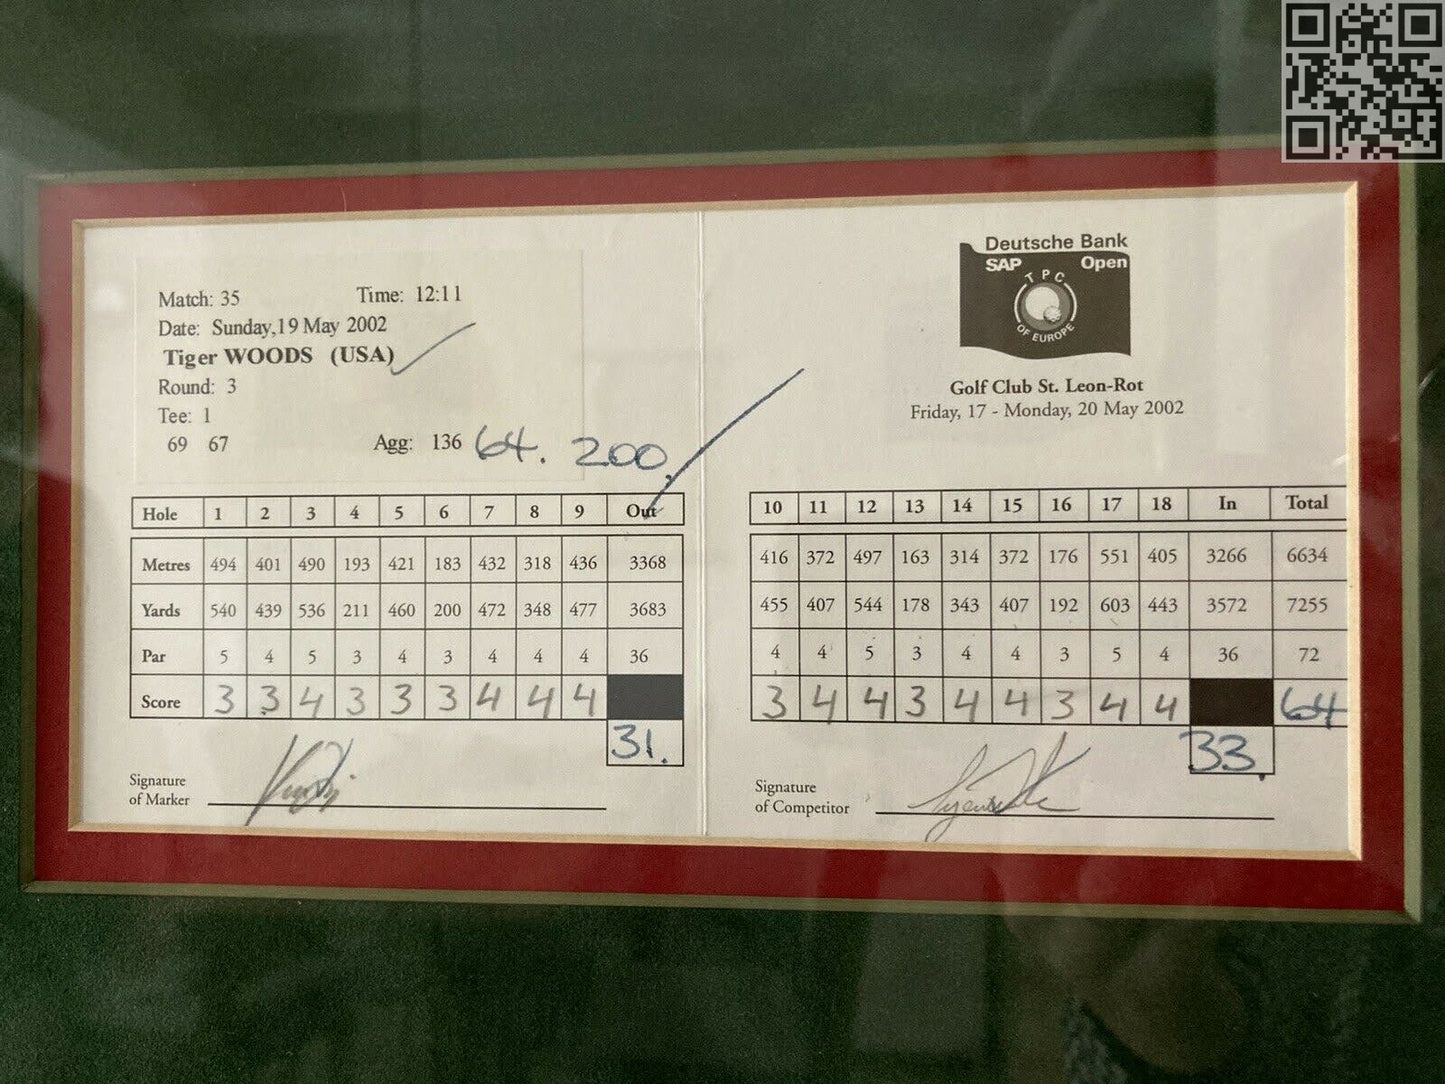 2002 Deutsche Bank SAP Open Tiger Woods Signed Official Tournament Scorecards - All 4 days WIN